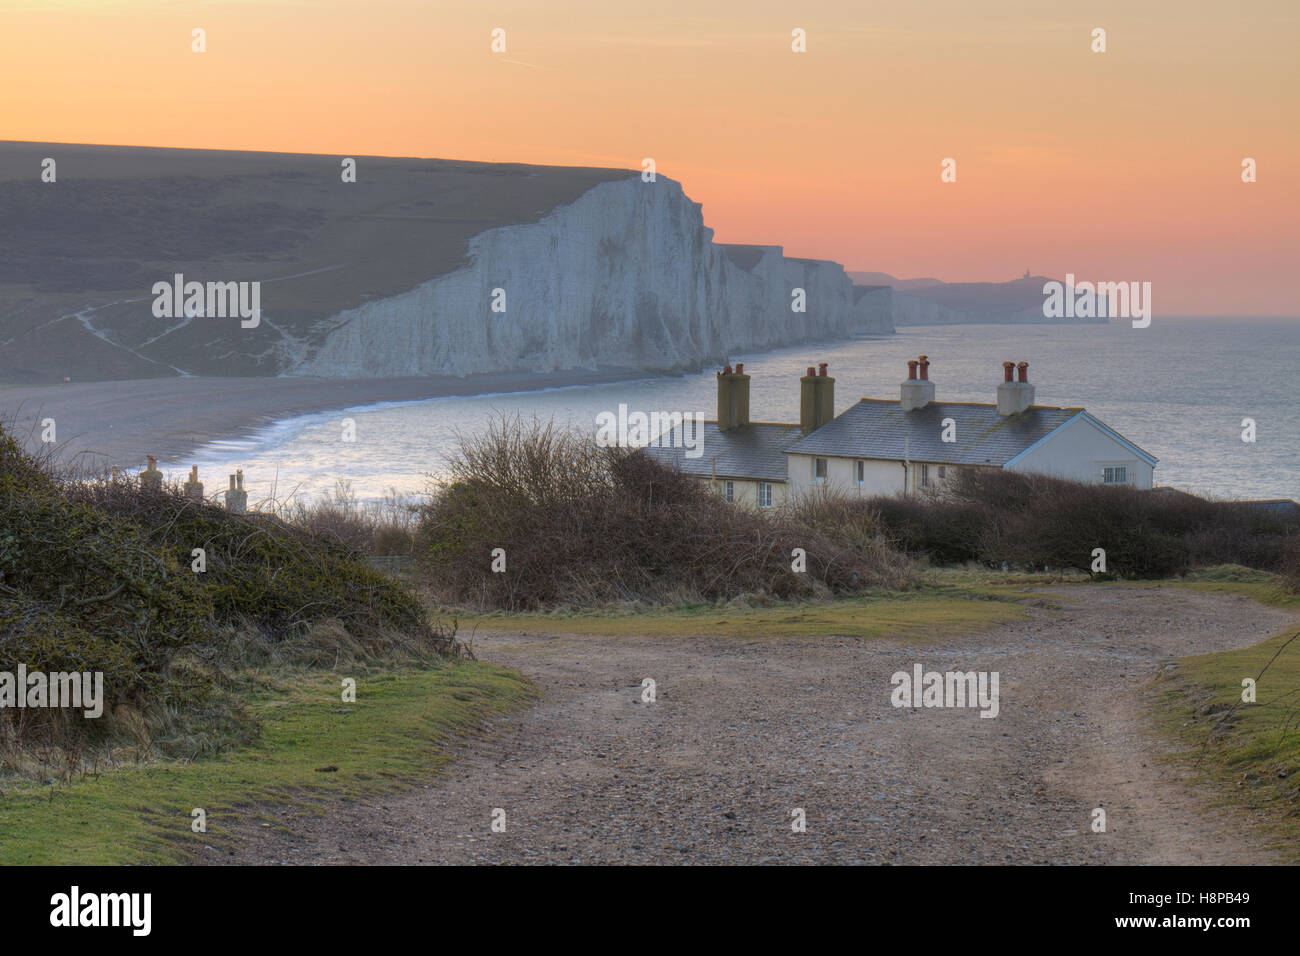 Les Sept Soeurs cliffs and coastguard cottages à l'aube. De Seaford Head, South Downs, East Sussex, Angleterre. Février. Banque D'Images